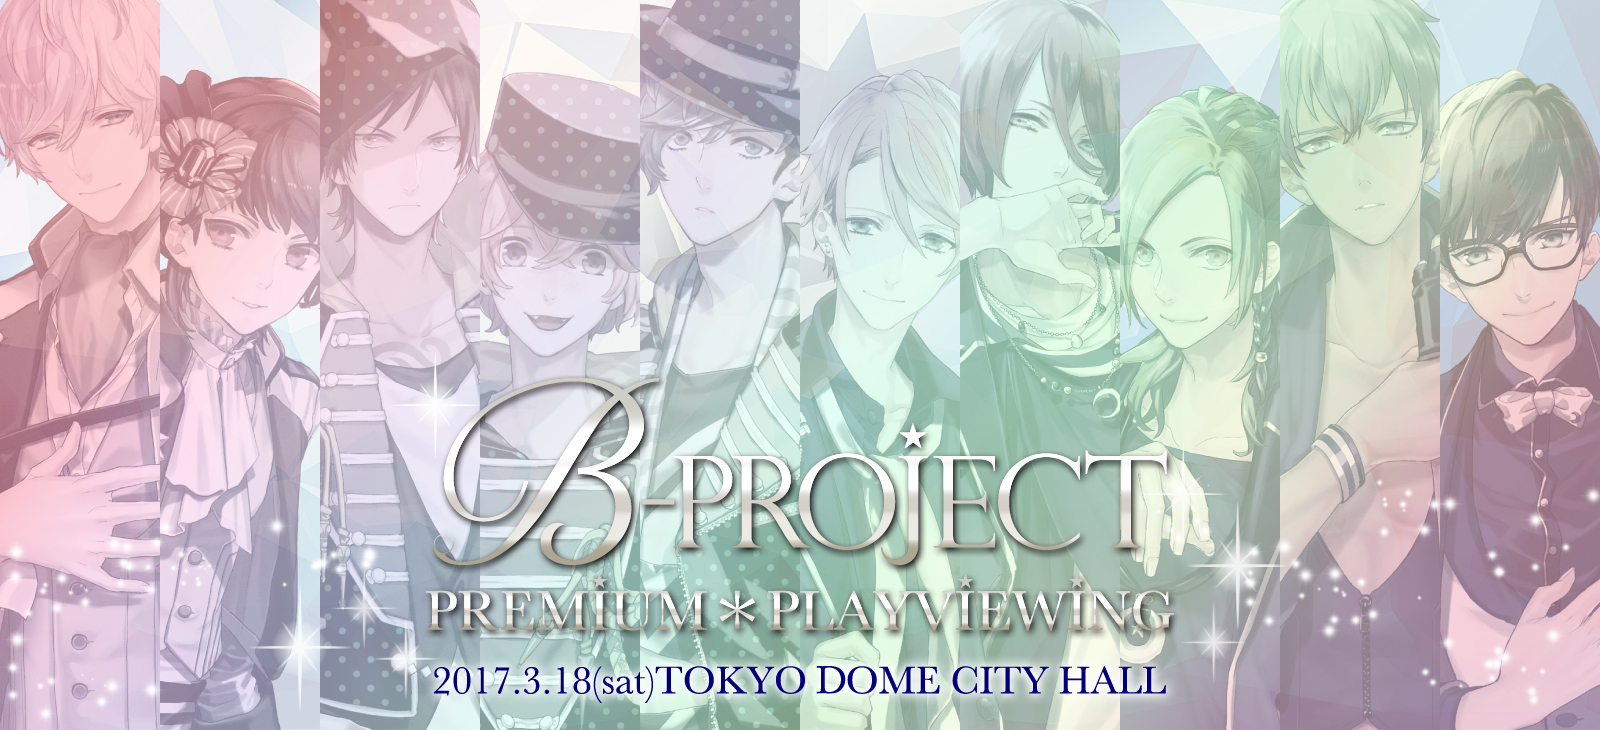 一夜限りのプレミアム上映会 B Project Brilliant Party 3月18日 土 東京ドームシティホールにて プレイビューイング上映会開催決定 B Project 公式サイト